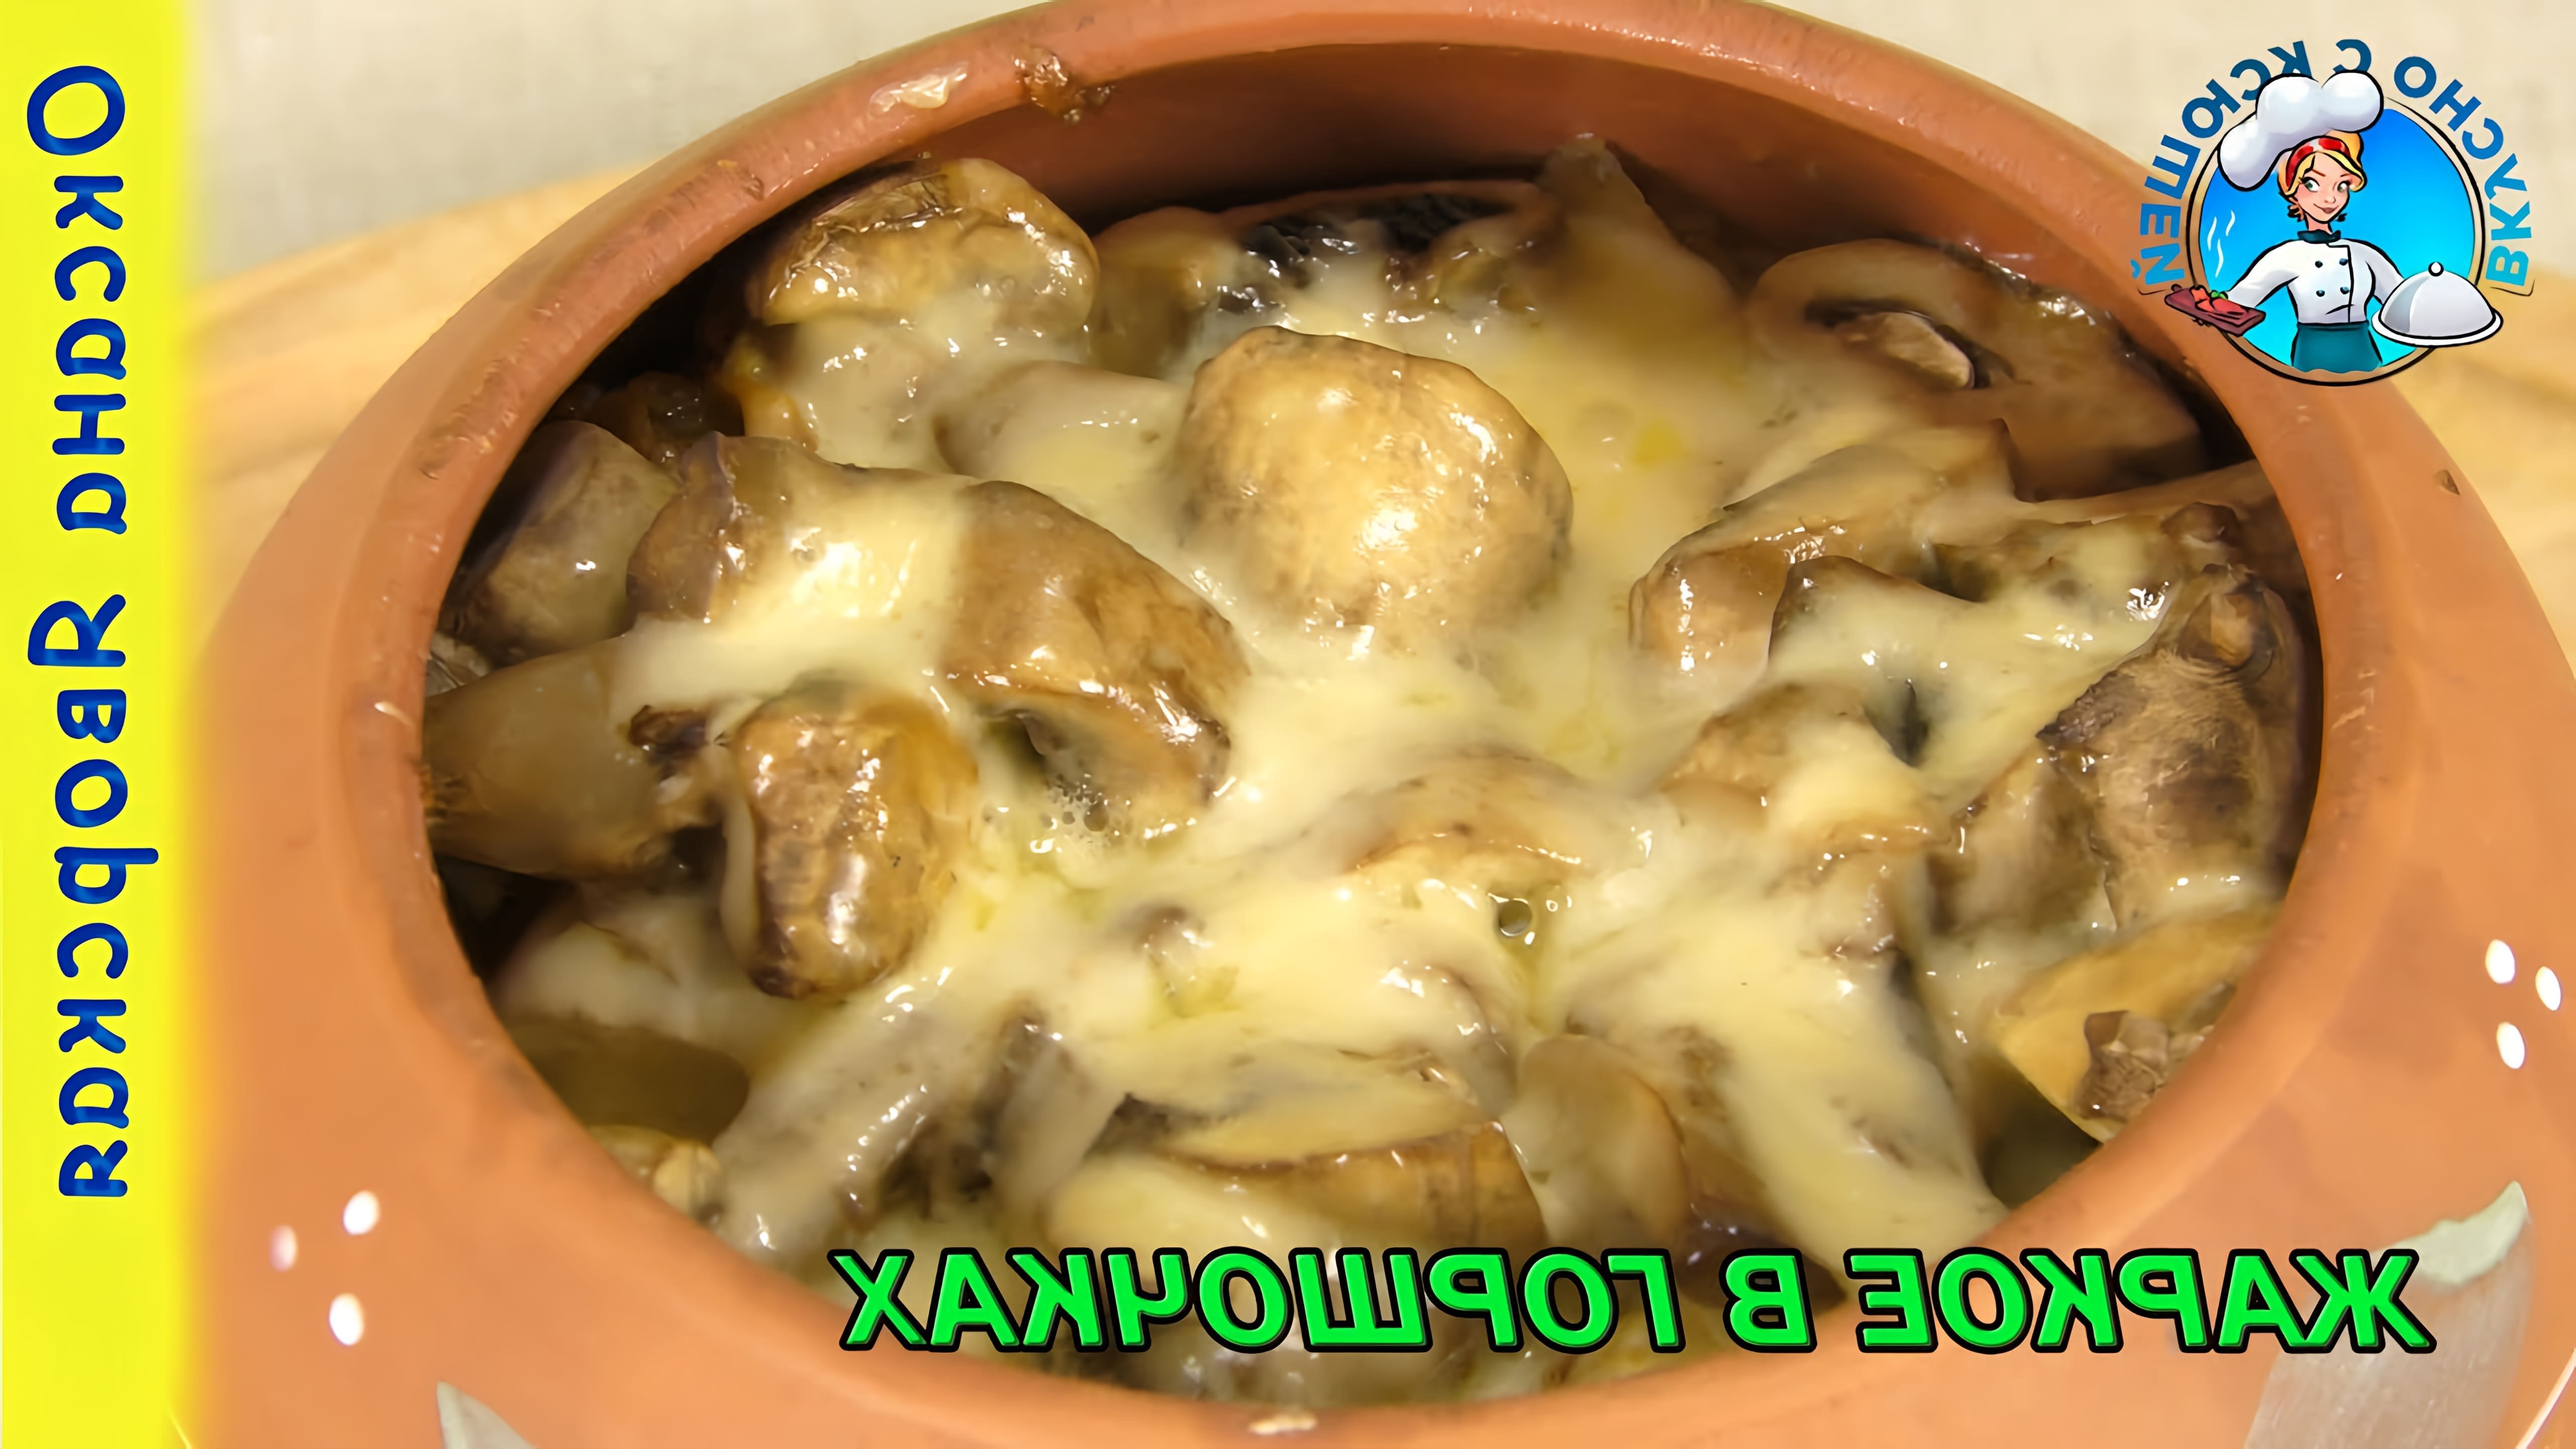 В этом видео демонстрируется рецепт приготовления жаркого в горшочках с мясом и грибами в духовке